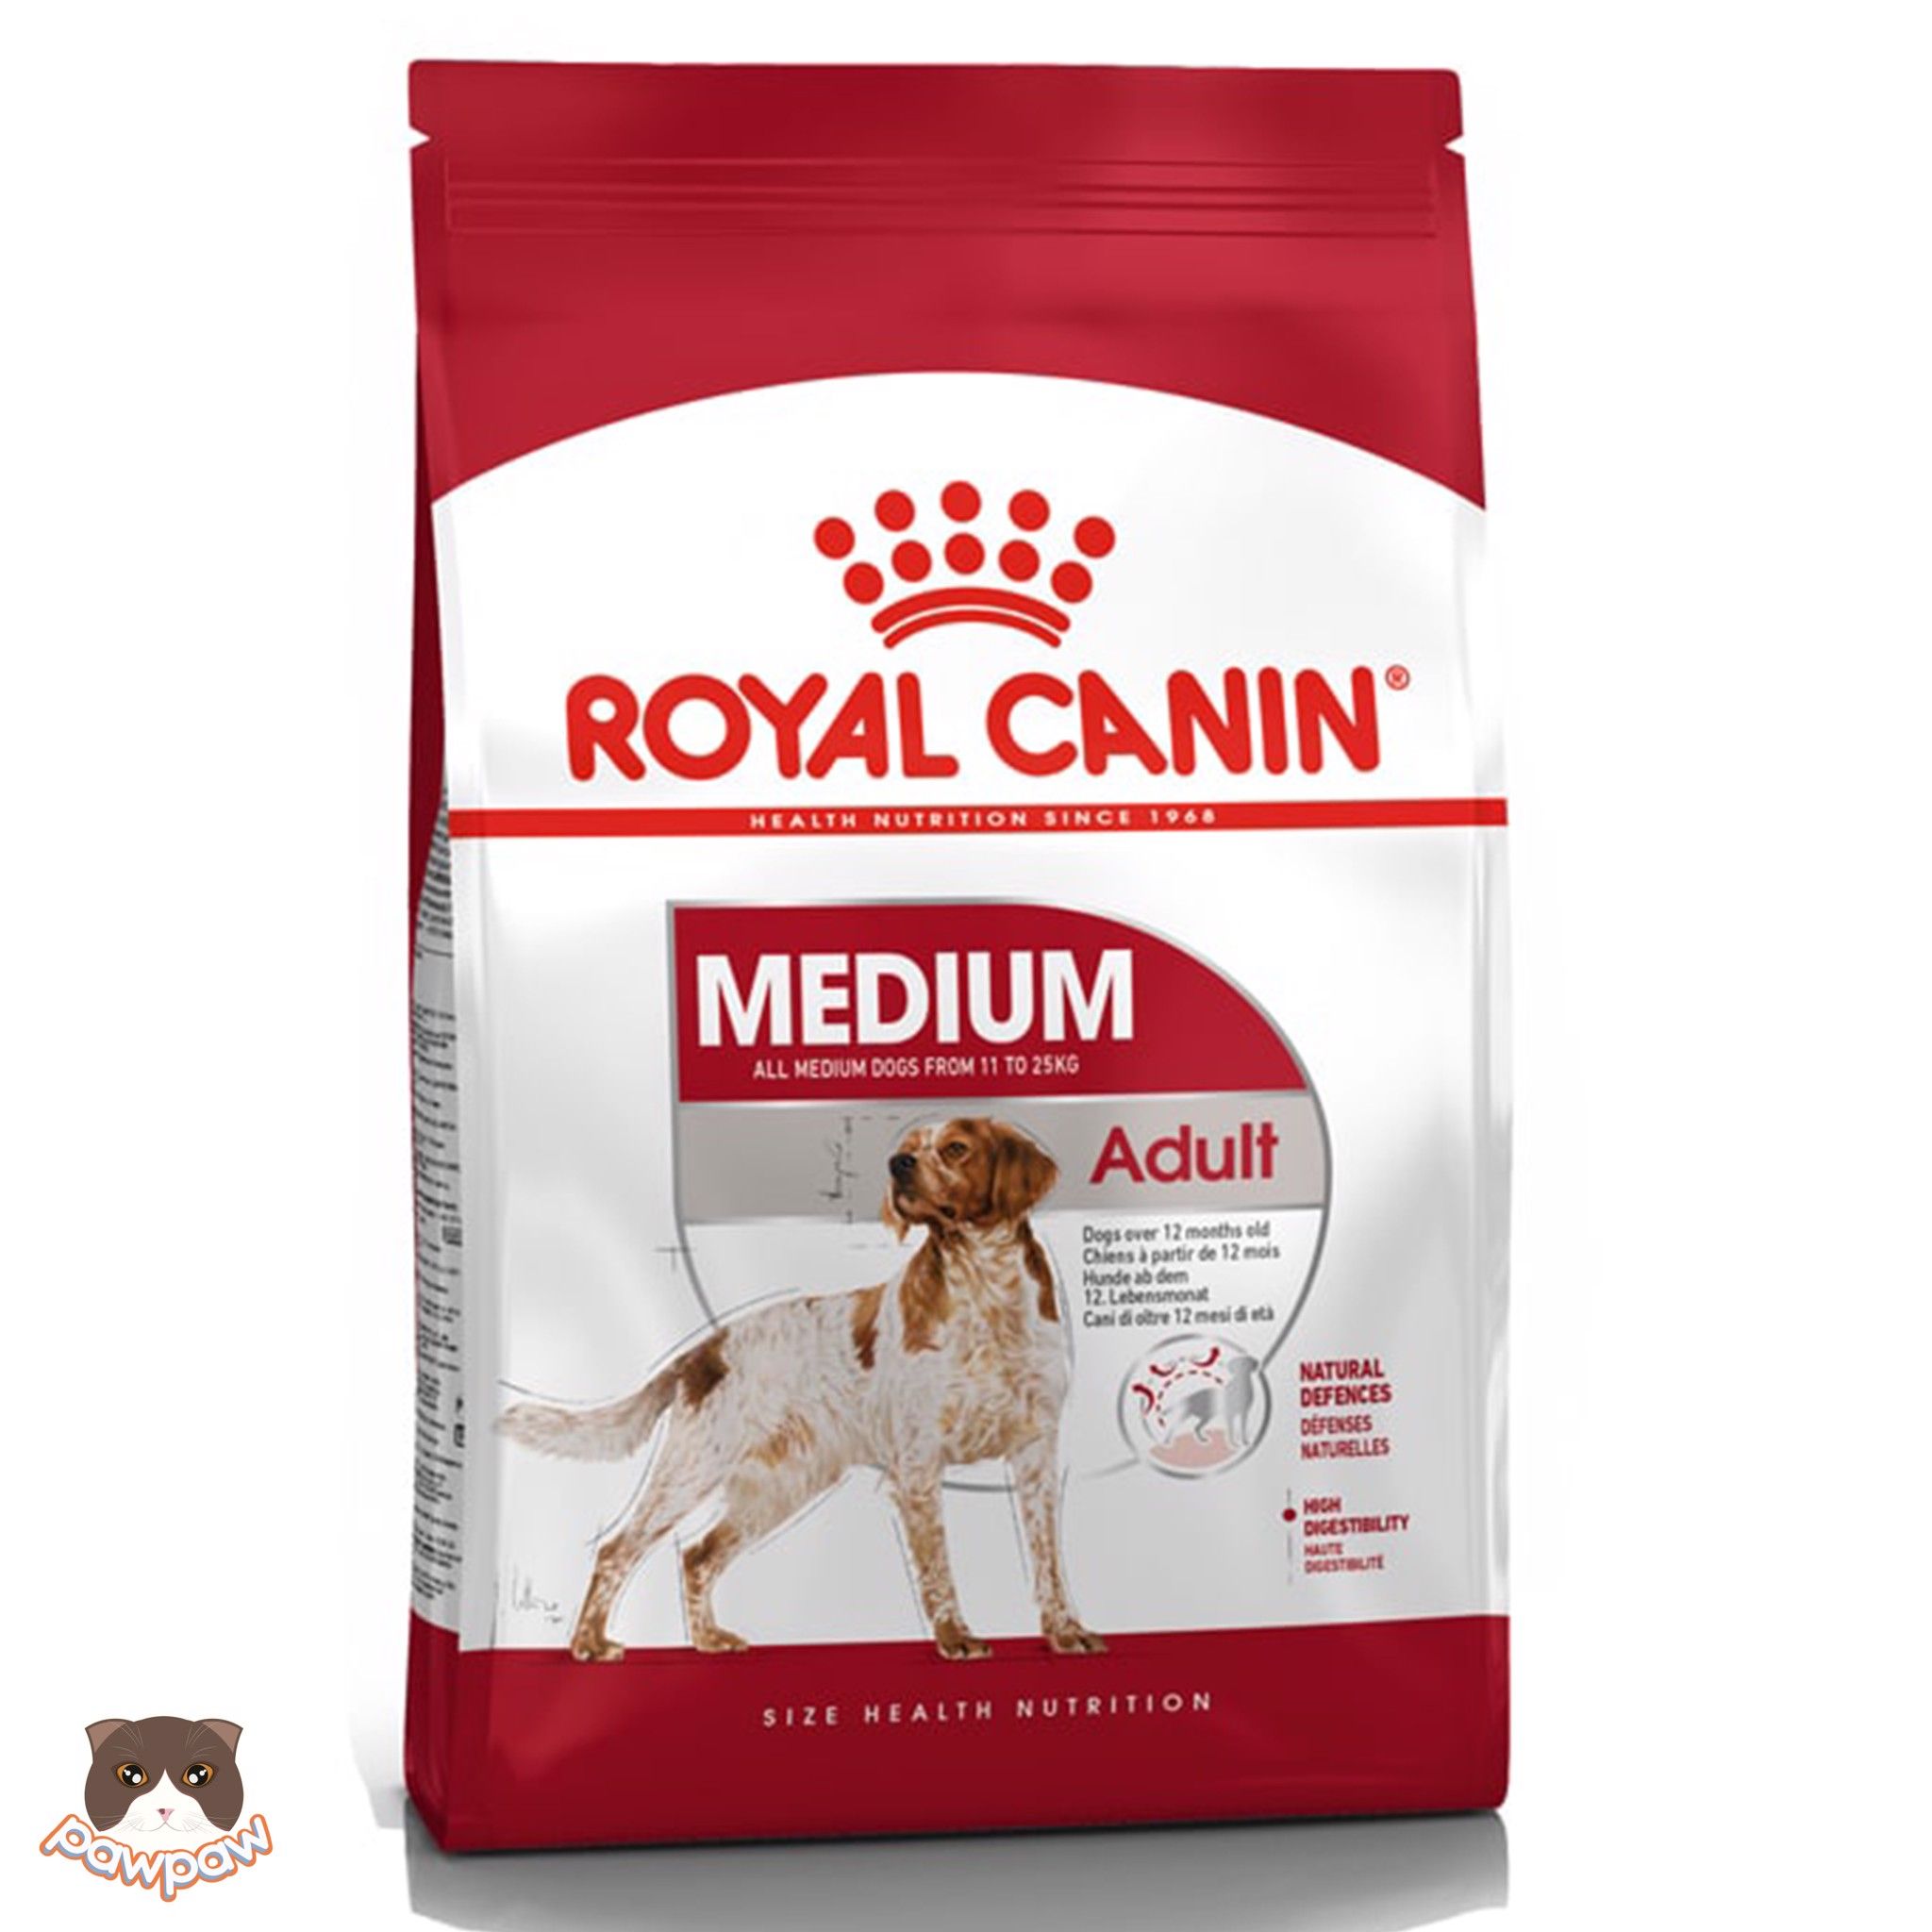  Hạt Royal Canin Medium Adult cho chó trưởng thành 